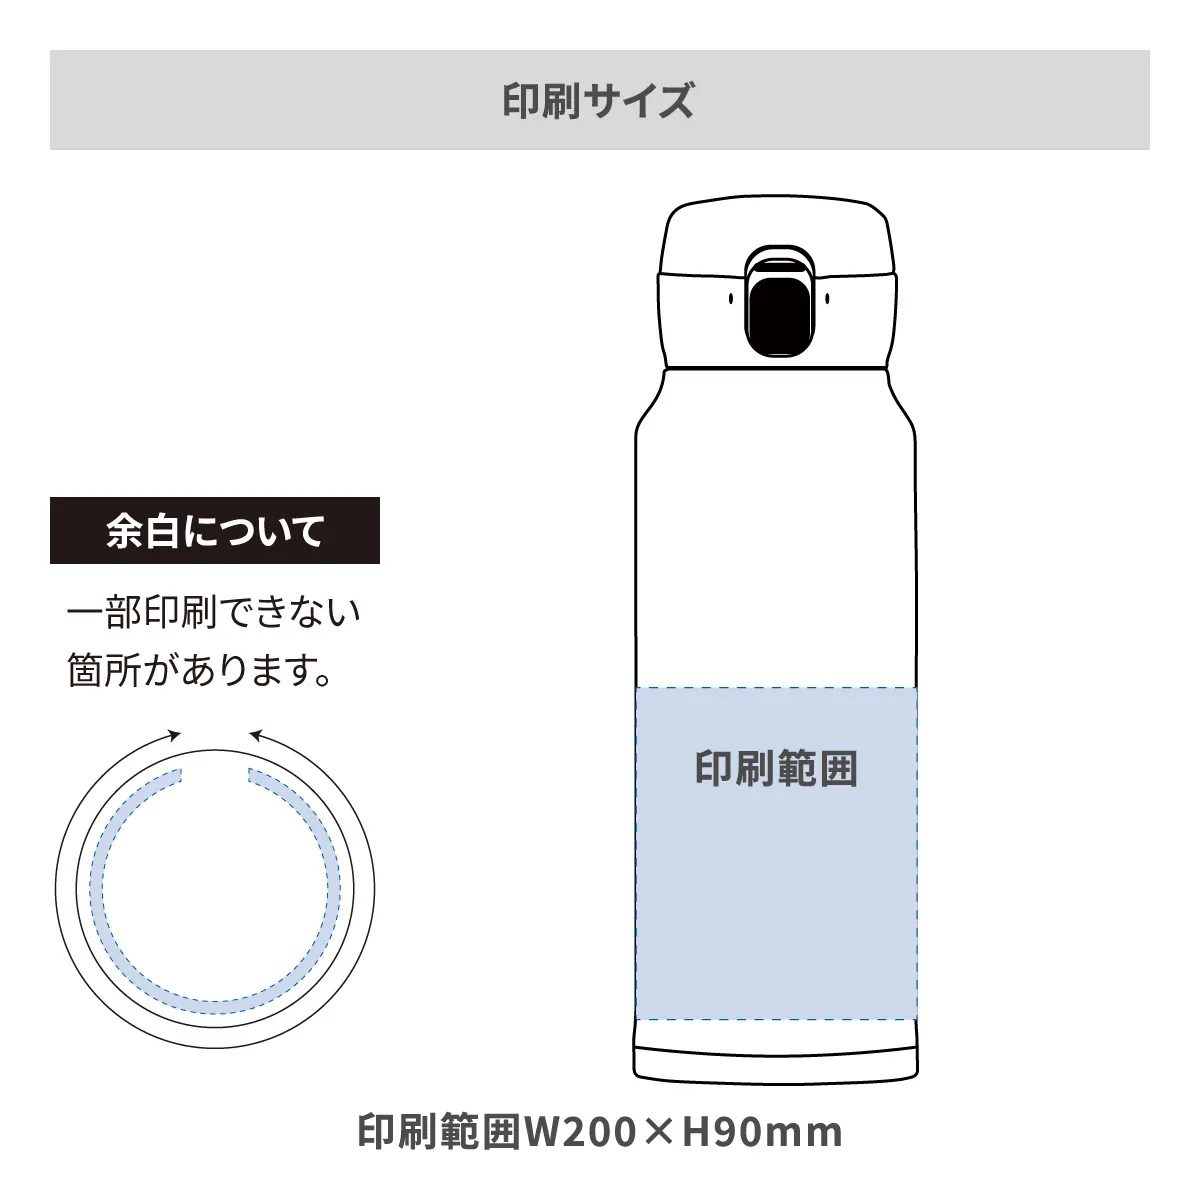 エアリスト 分解できる超軽量ワンタッチボトル 620ml【オリジナルステンレスボトル / 回転シルク印刷】 画像2